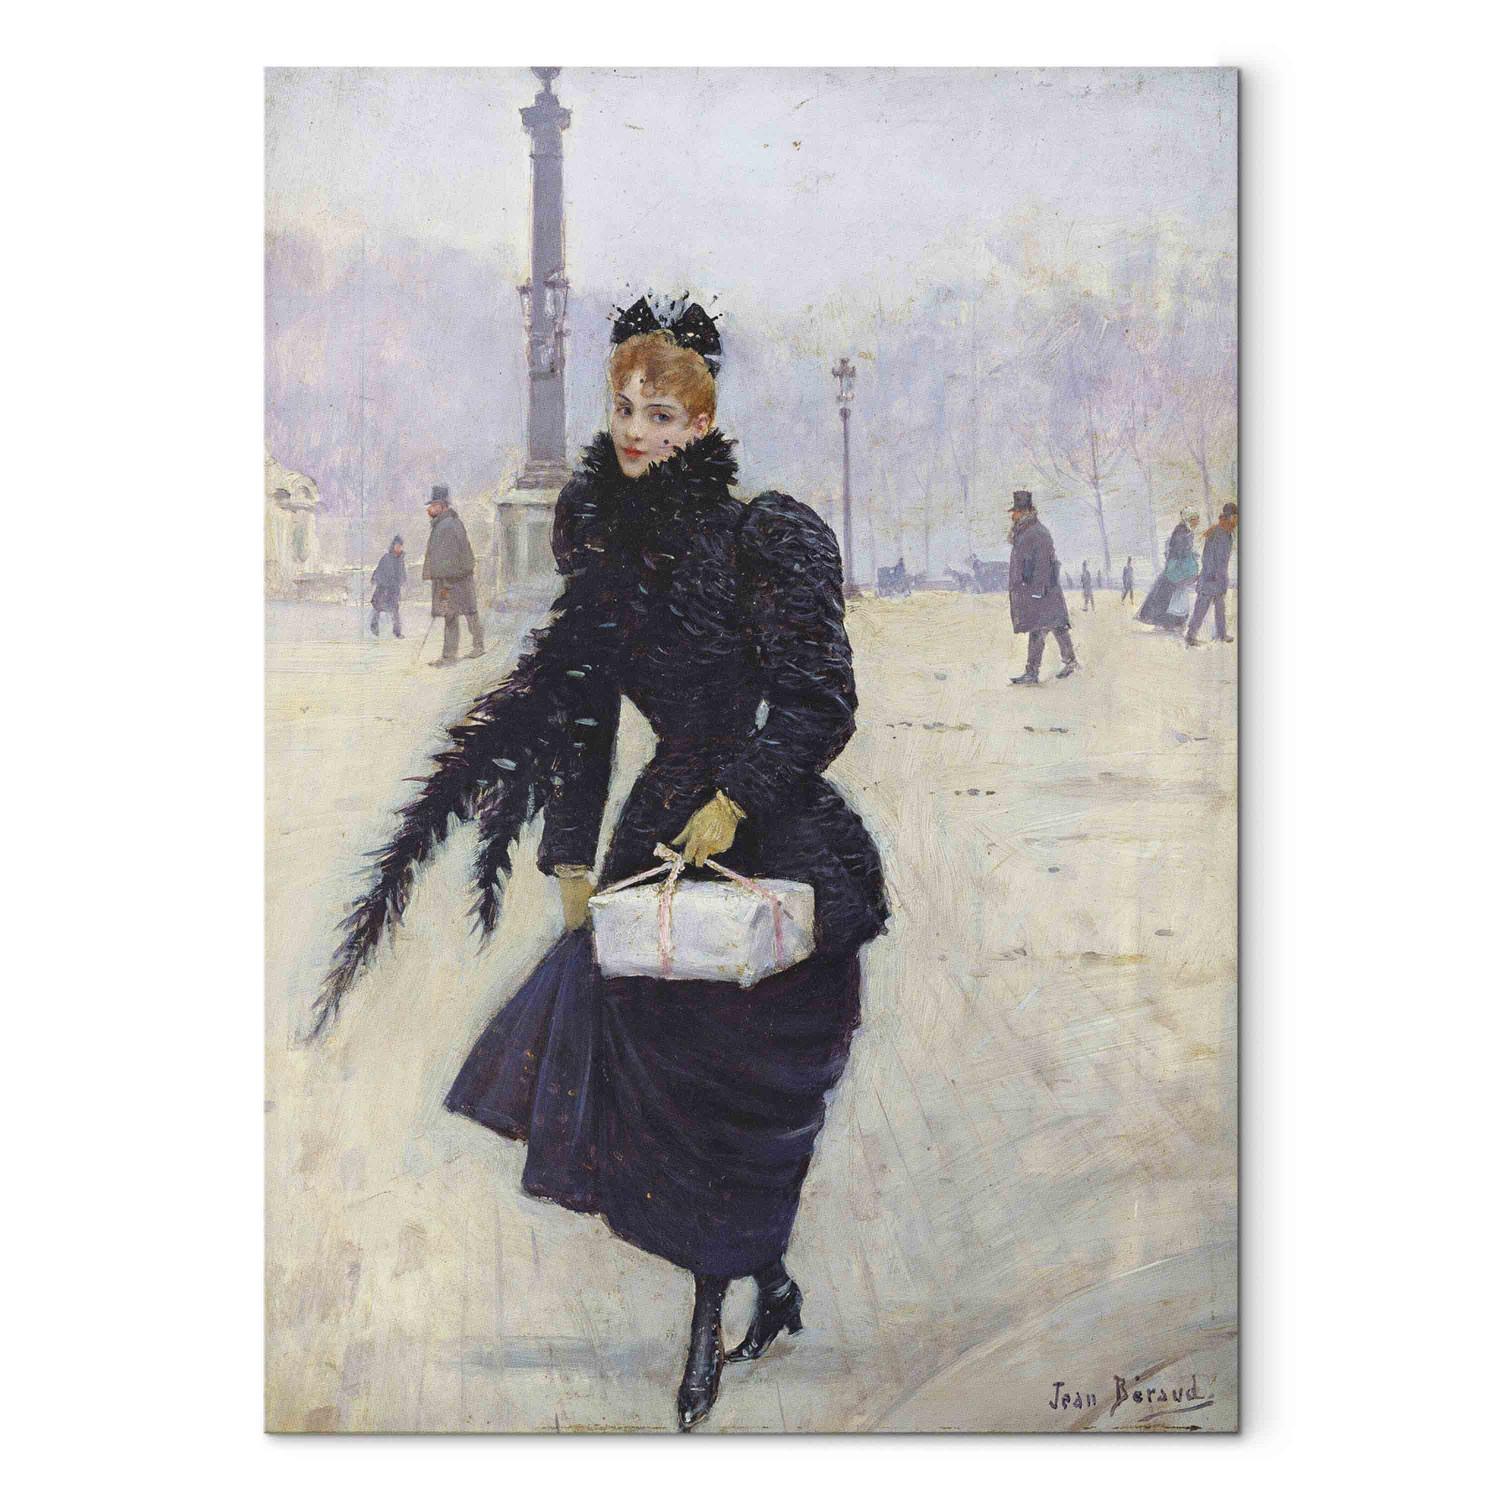 Cuadro famoso Parisian woman in the Place de la Concorde